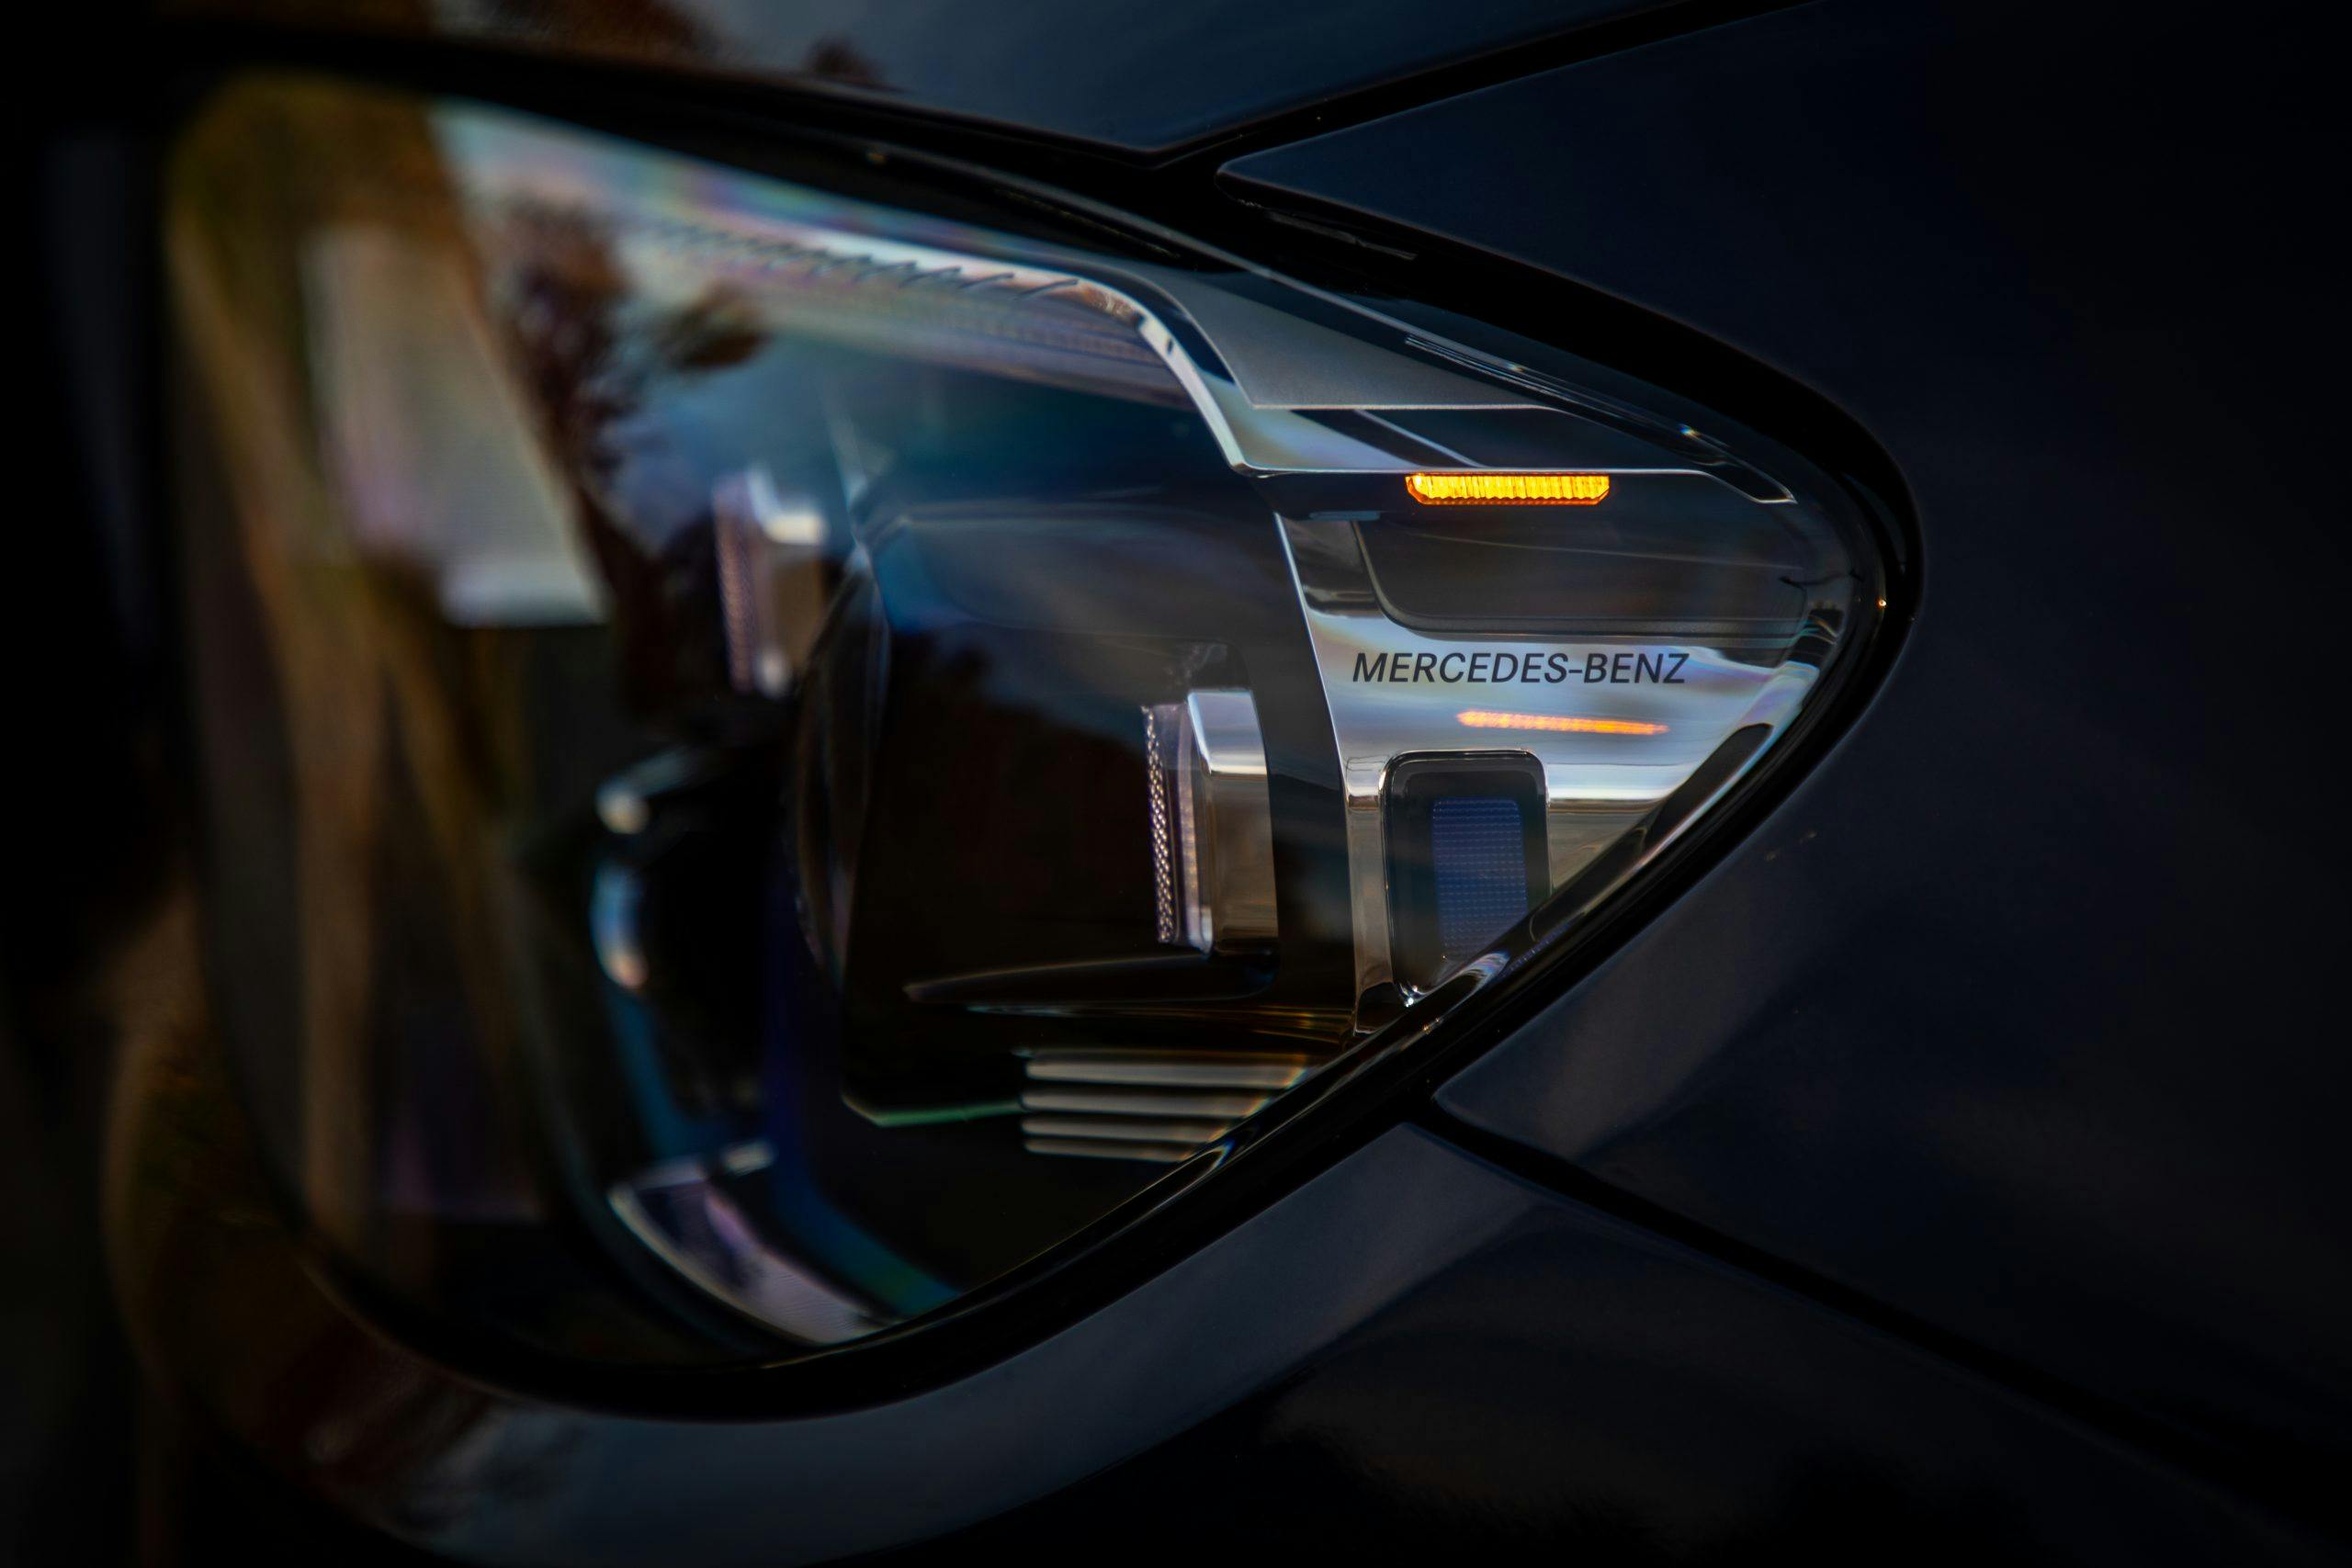 2021 Mercedes Benz E 450 4MATIC headlight detail